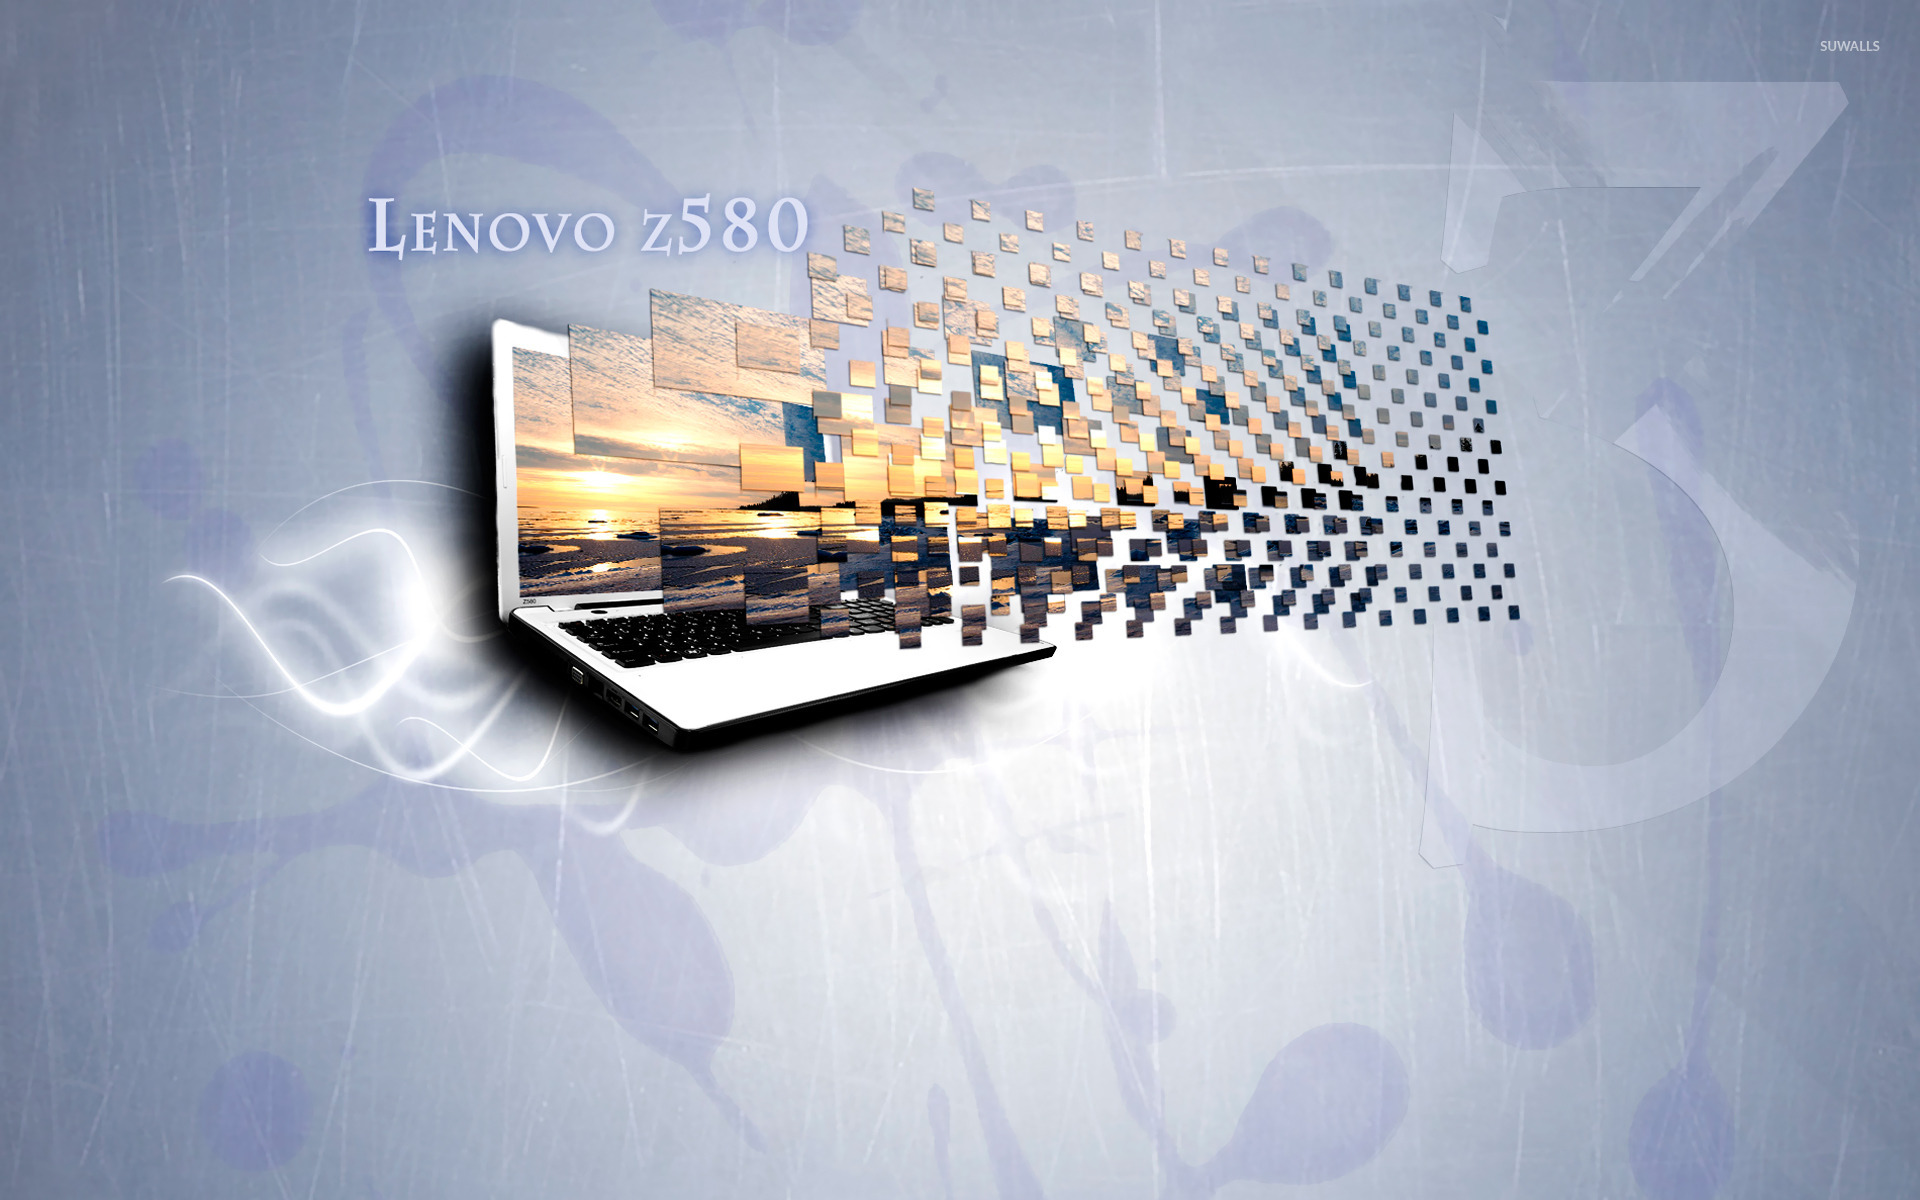 Lenovo Z580 Wallpaper Puter